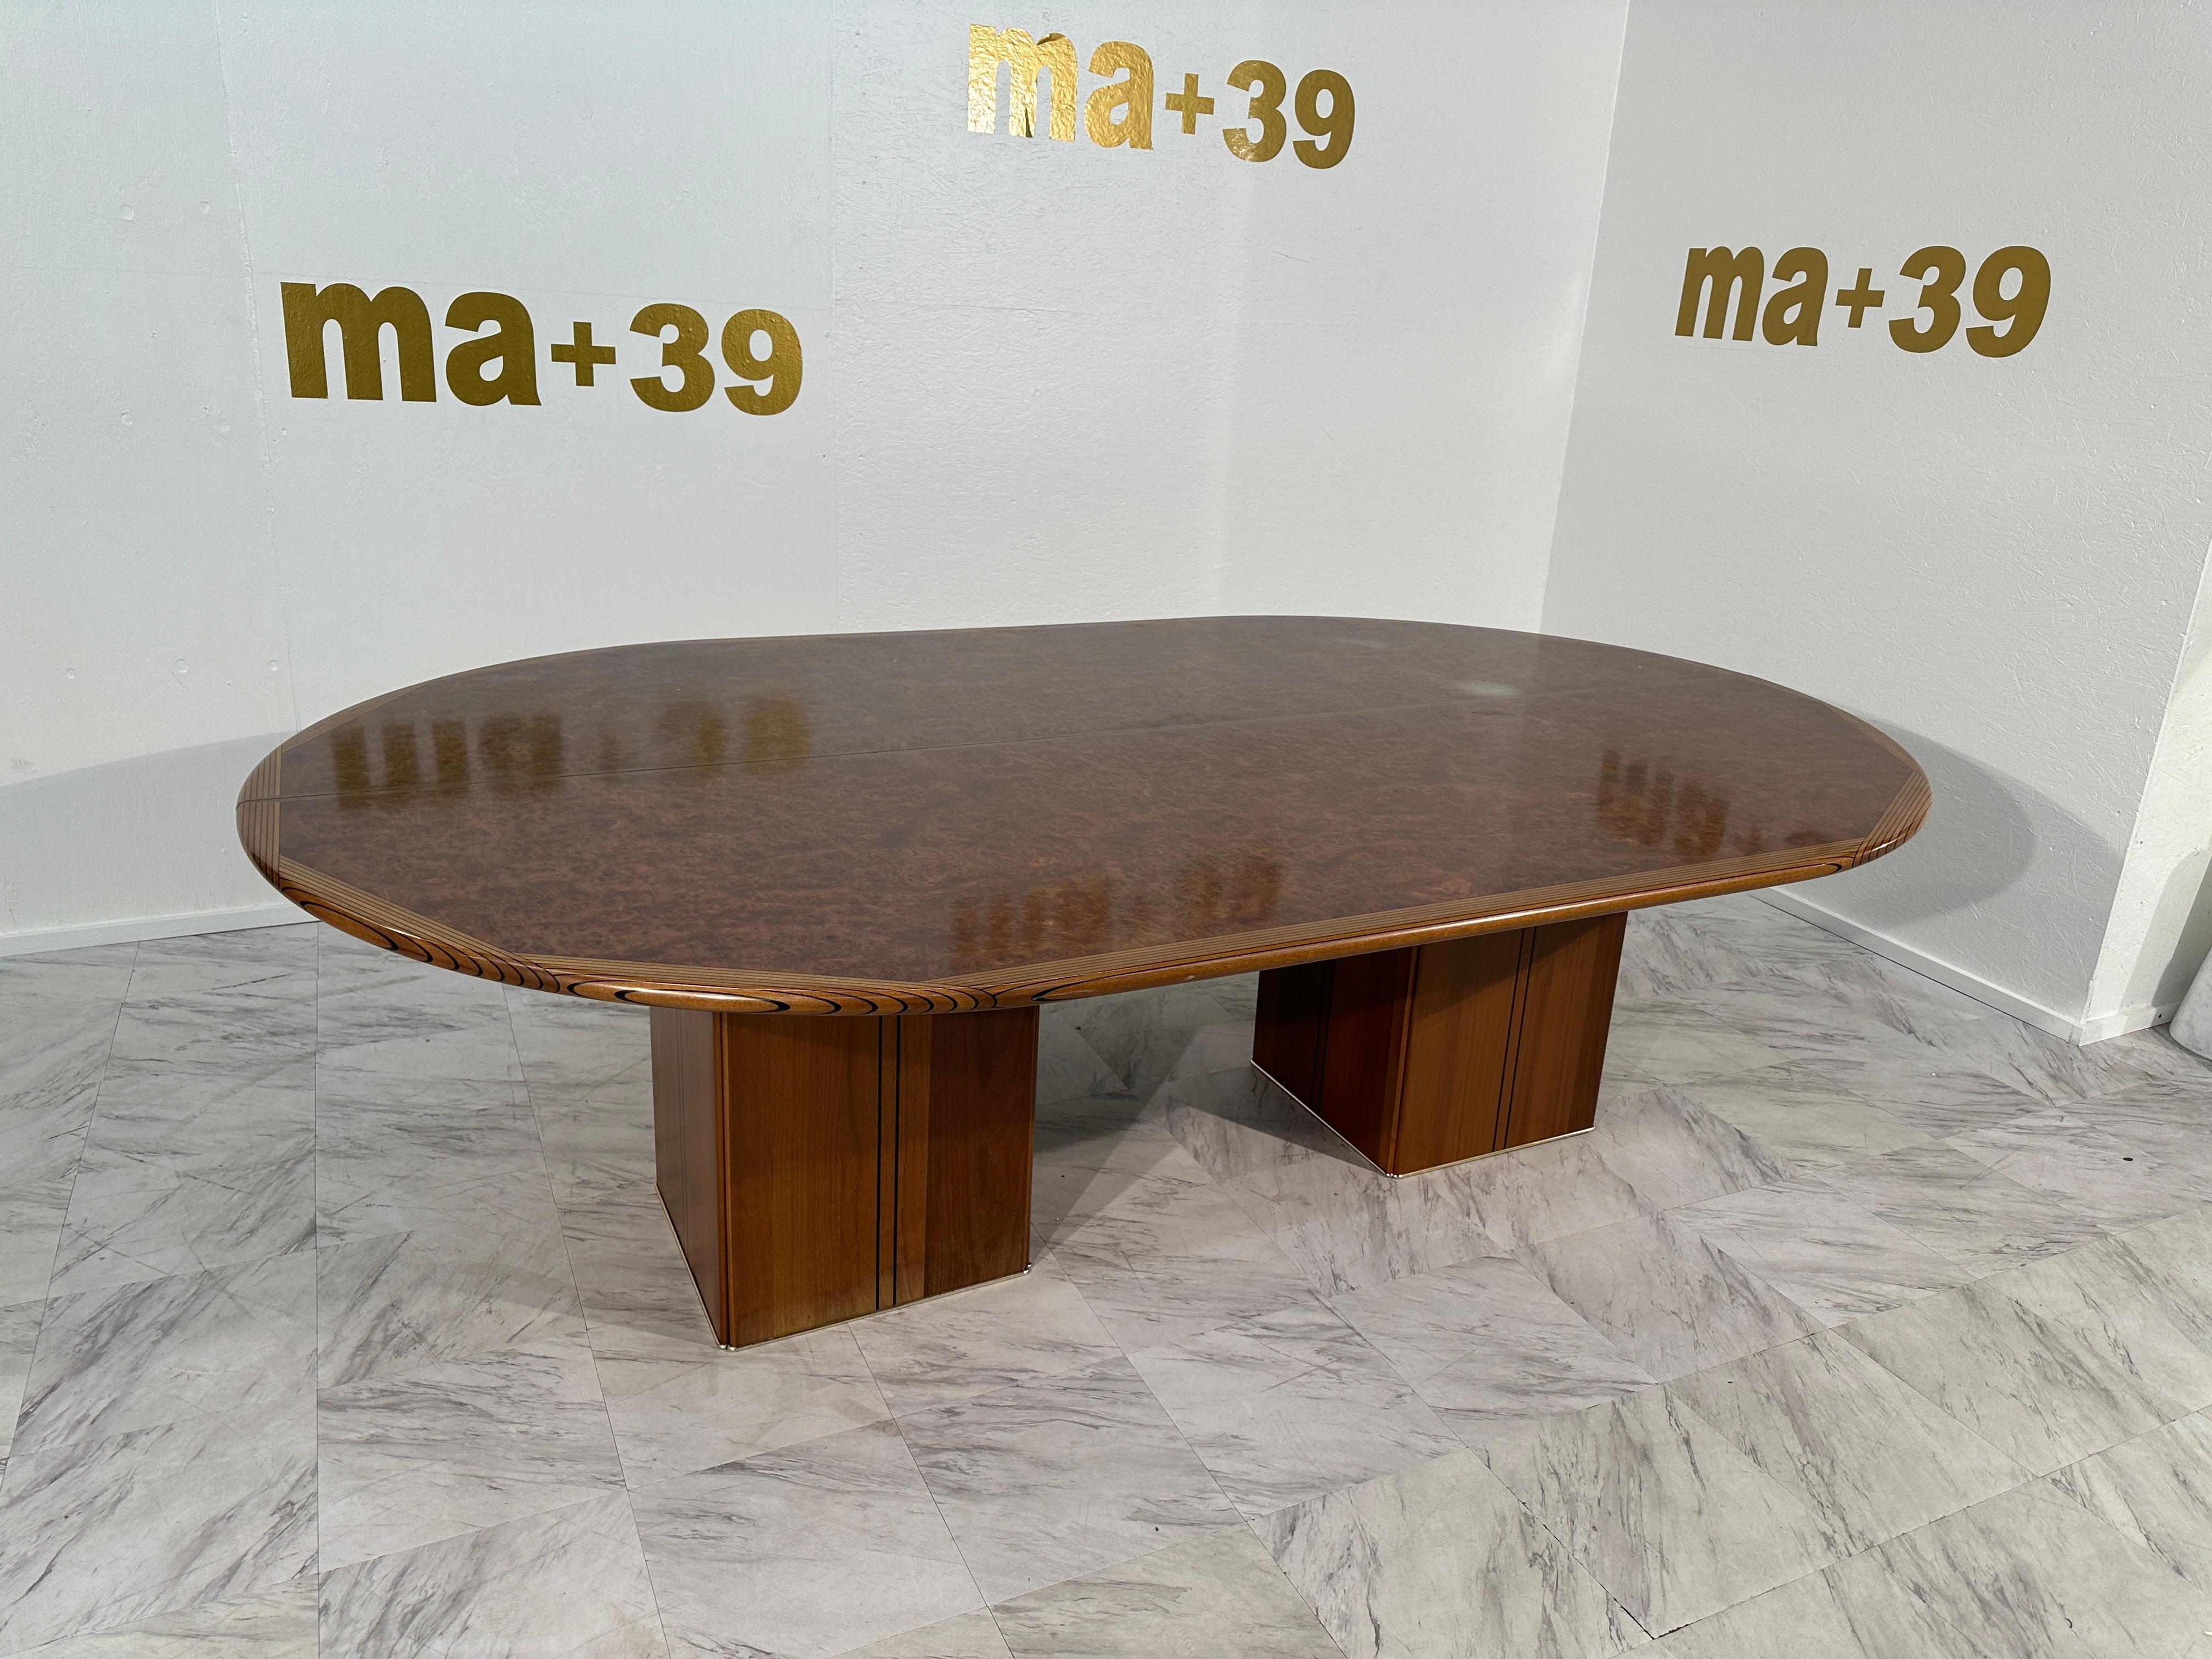 Der Tobia & Afra Scarpa Large Africa Wooden Conference Table von Maxalto aus den 1970er Jahren verkörpert die schlichte Raffinesse und Handwerkskunst, die für das italienische Design dieser Zeit charakteristisch sind. Dieser Konferenztisch ist ein